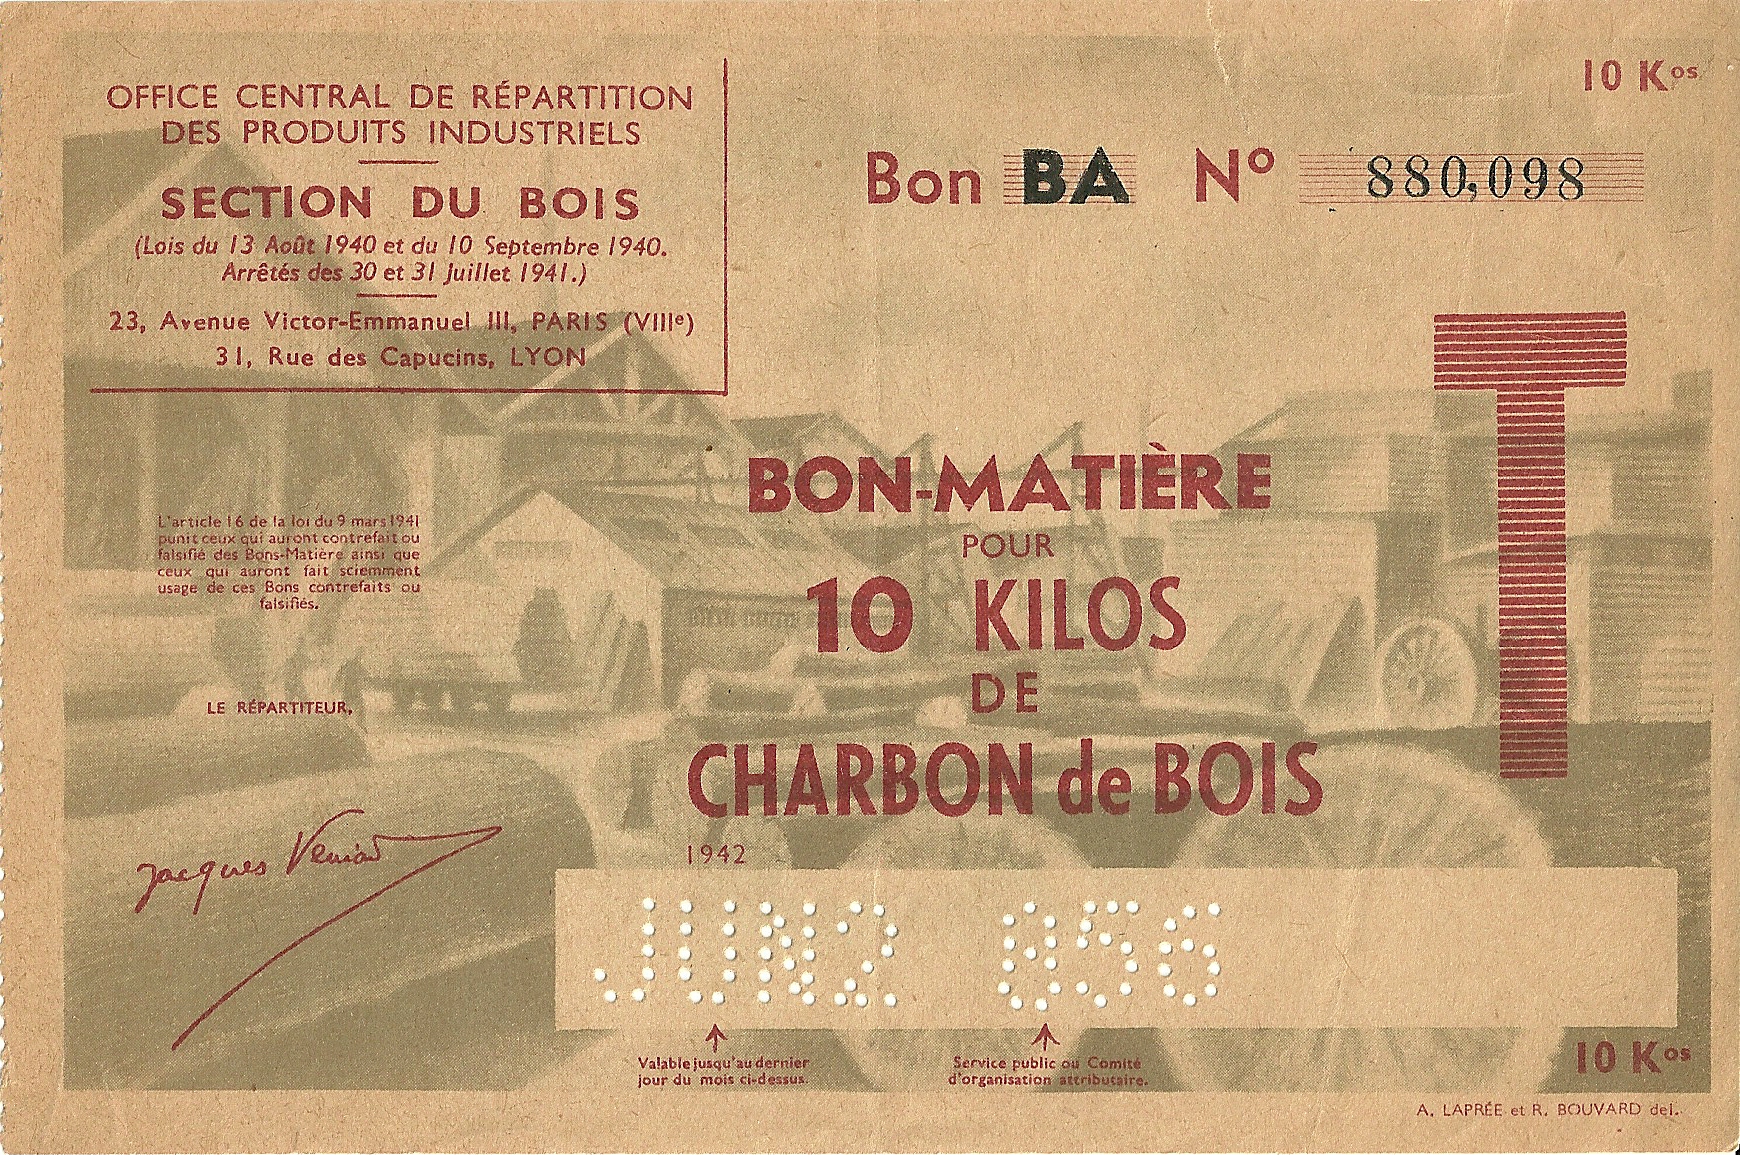 SECTION DU BOIS - Bon BA - BON-MATIERE POUR 10 KILOS de CHARBON de BOIS - 880,098